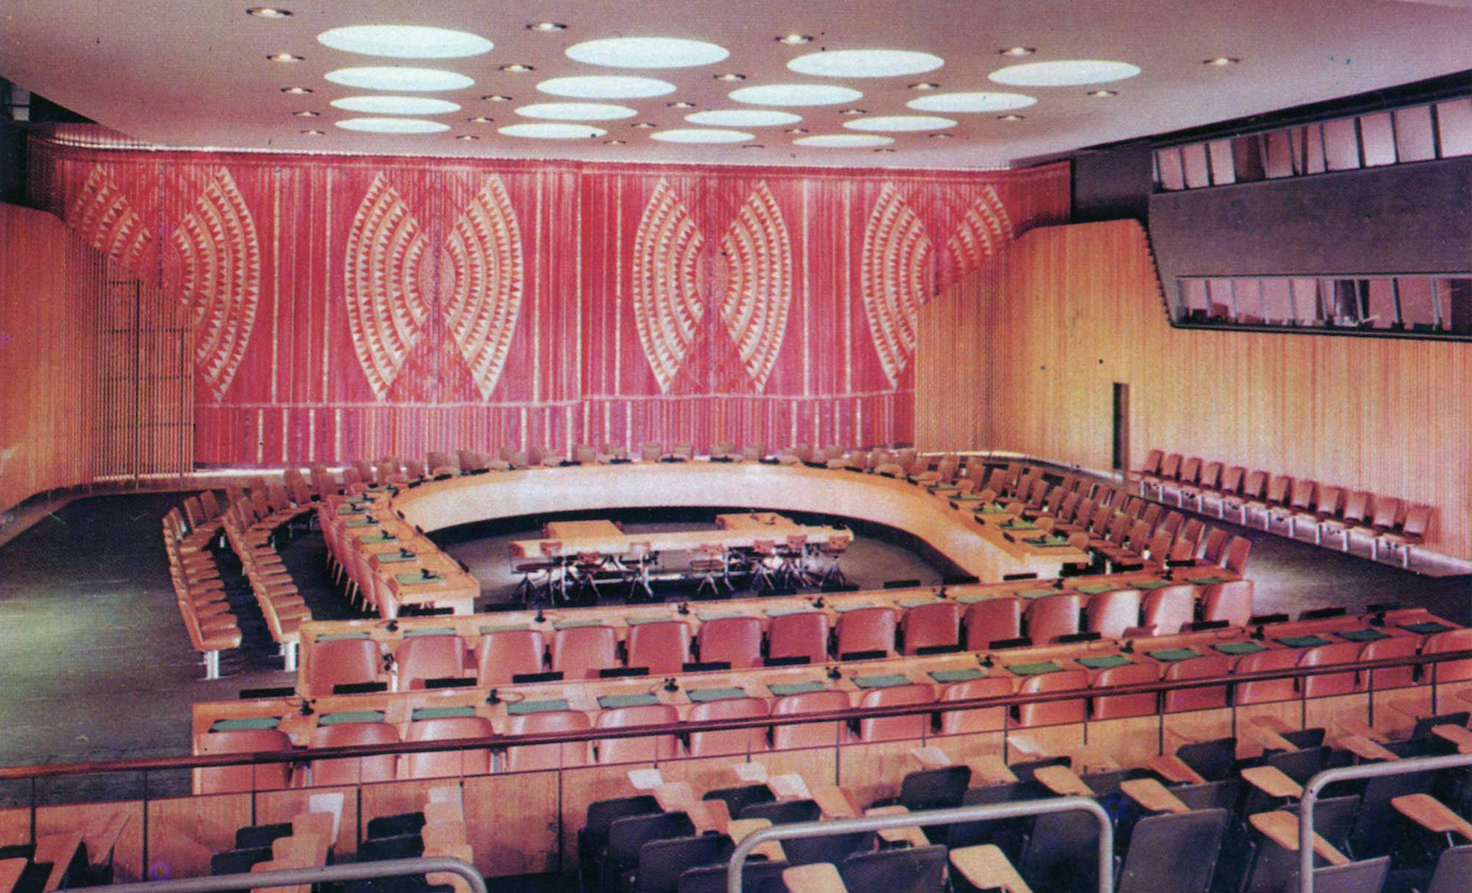 Cortinas colgadas en el Salón del Consejo Económico y Social de la Sede de las Naciones Unidas en Nueva York.